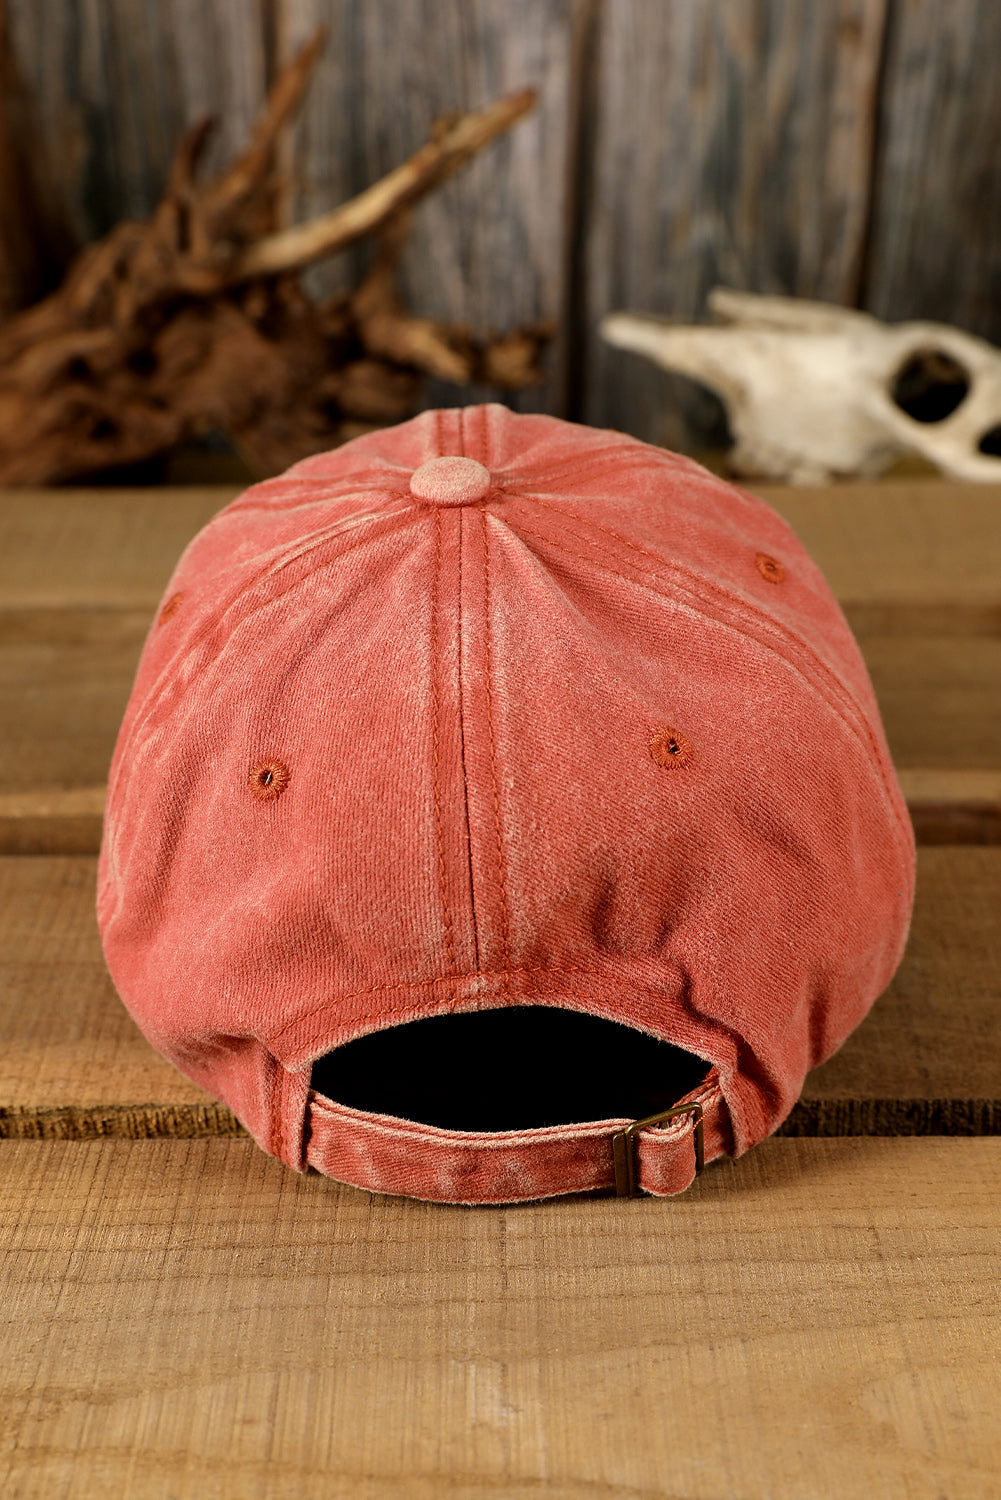 MAMA Orange Embroidered Washed Baseball Hat